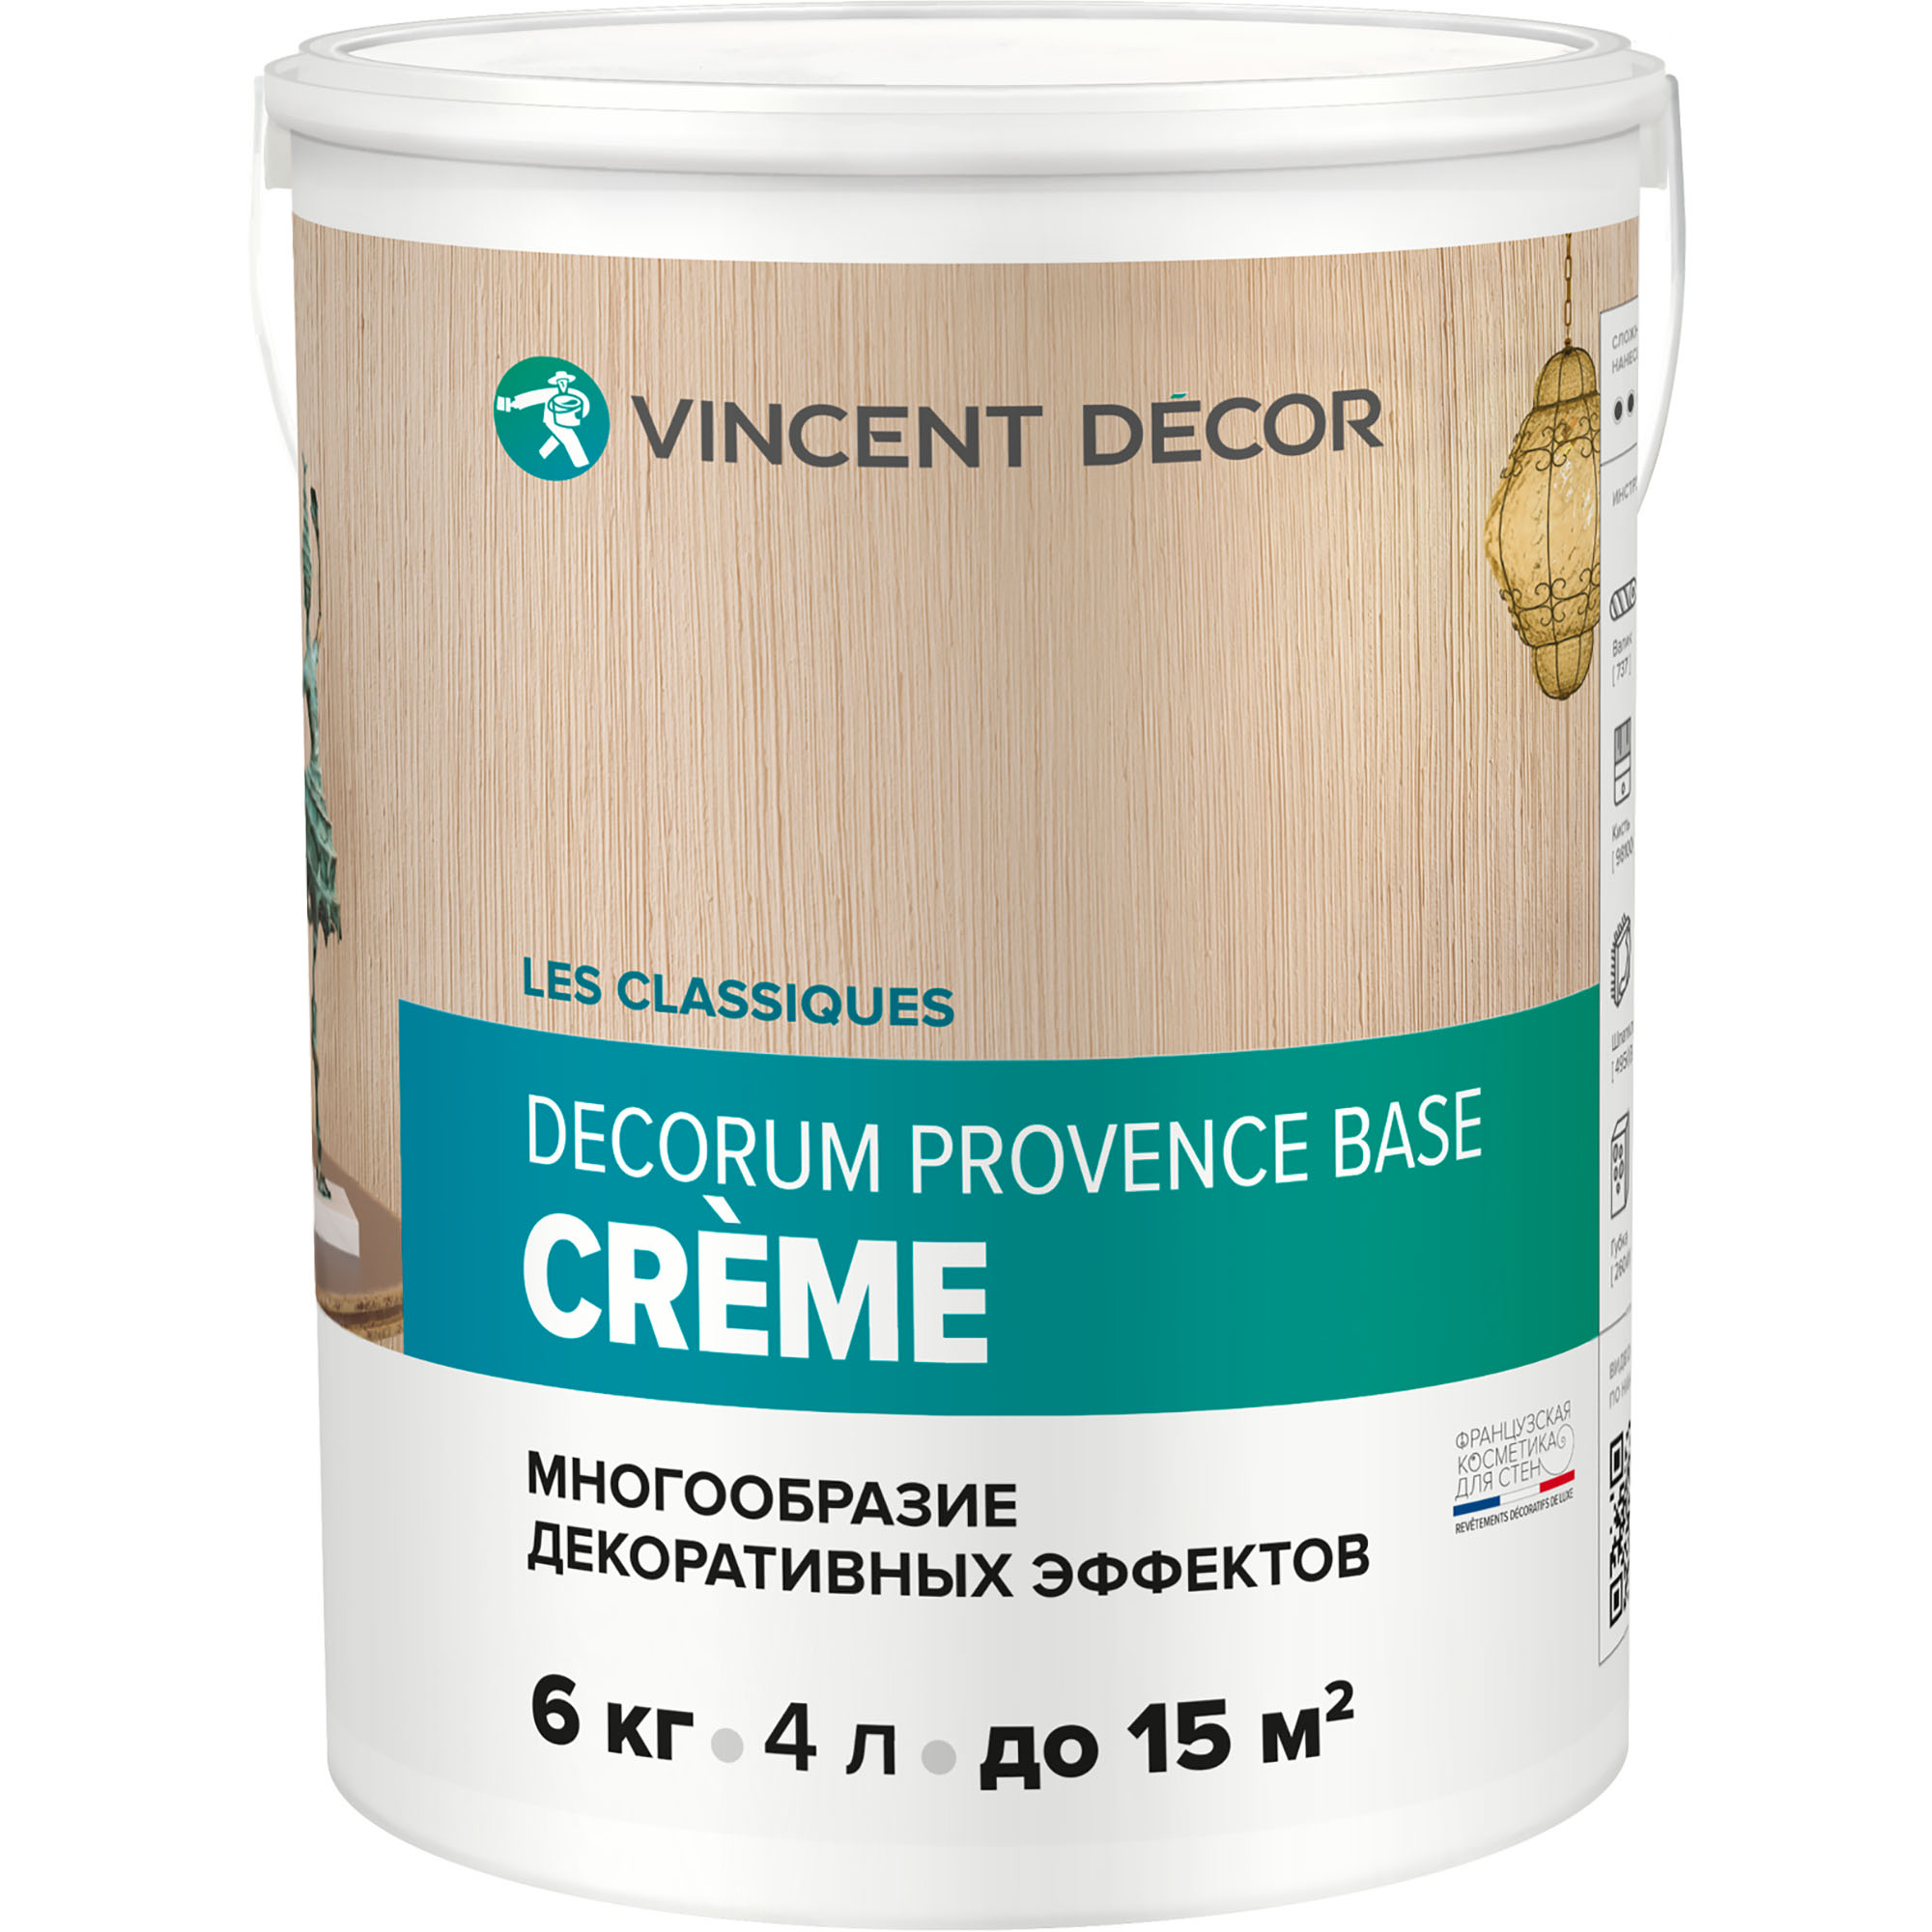 Декоративное покрытие Vincent Decor Decorum Provence Crema многообразные декоративные эффекты 6 кг кашпо декоративное евролит силуэт 30 см